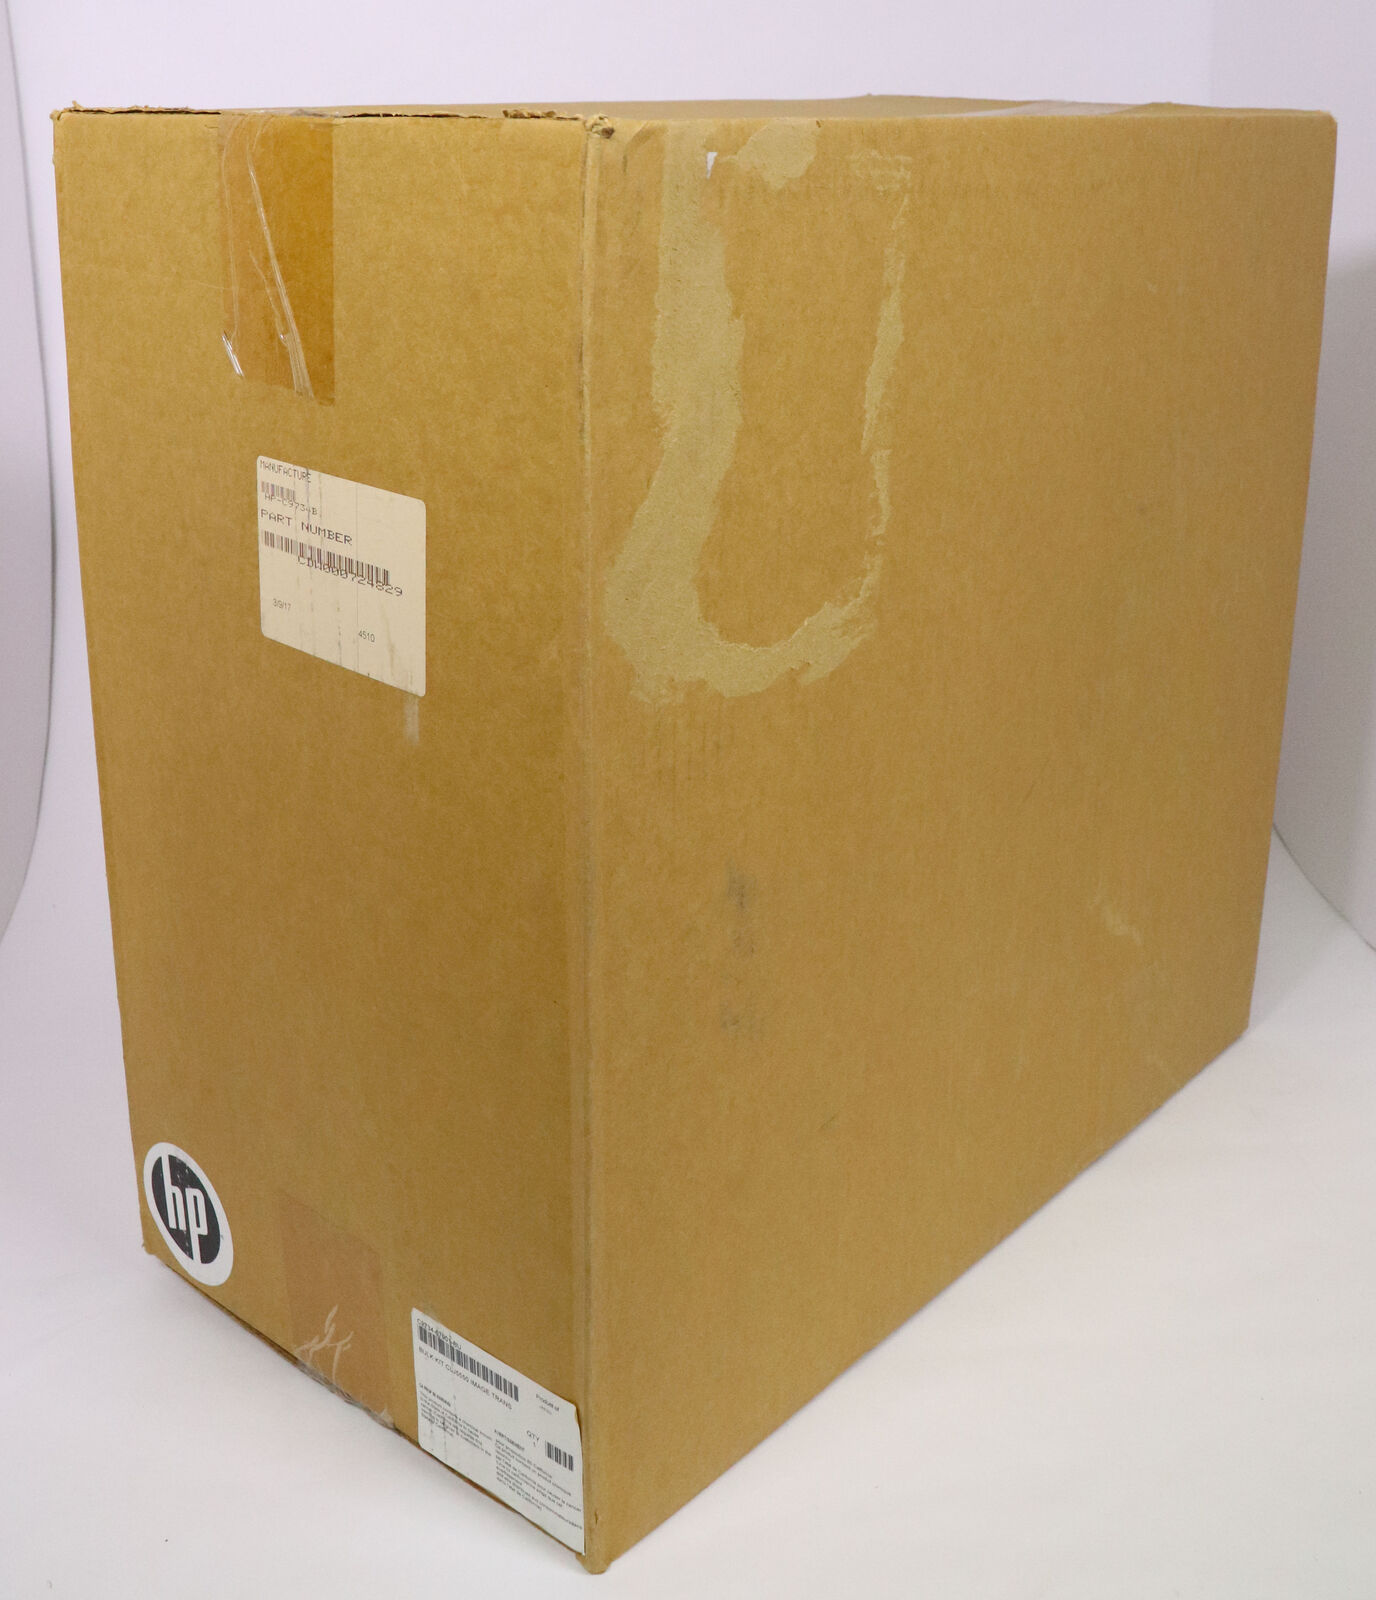 New in Box Image Transfer Kit For HP Color LaserJet 5500 5550 Series C9734B